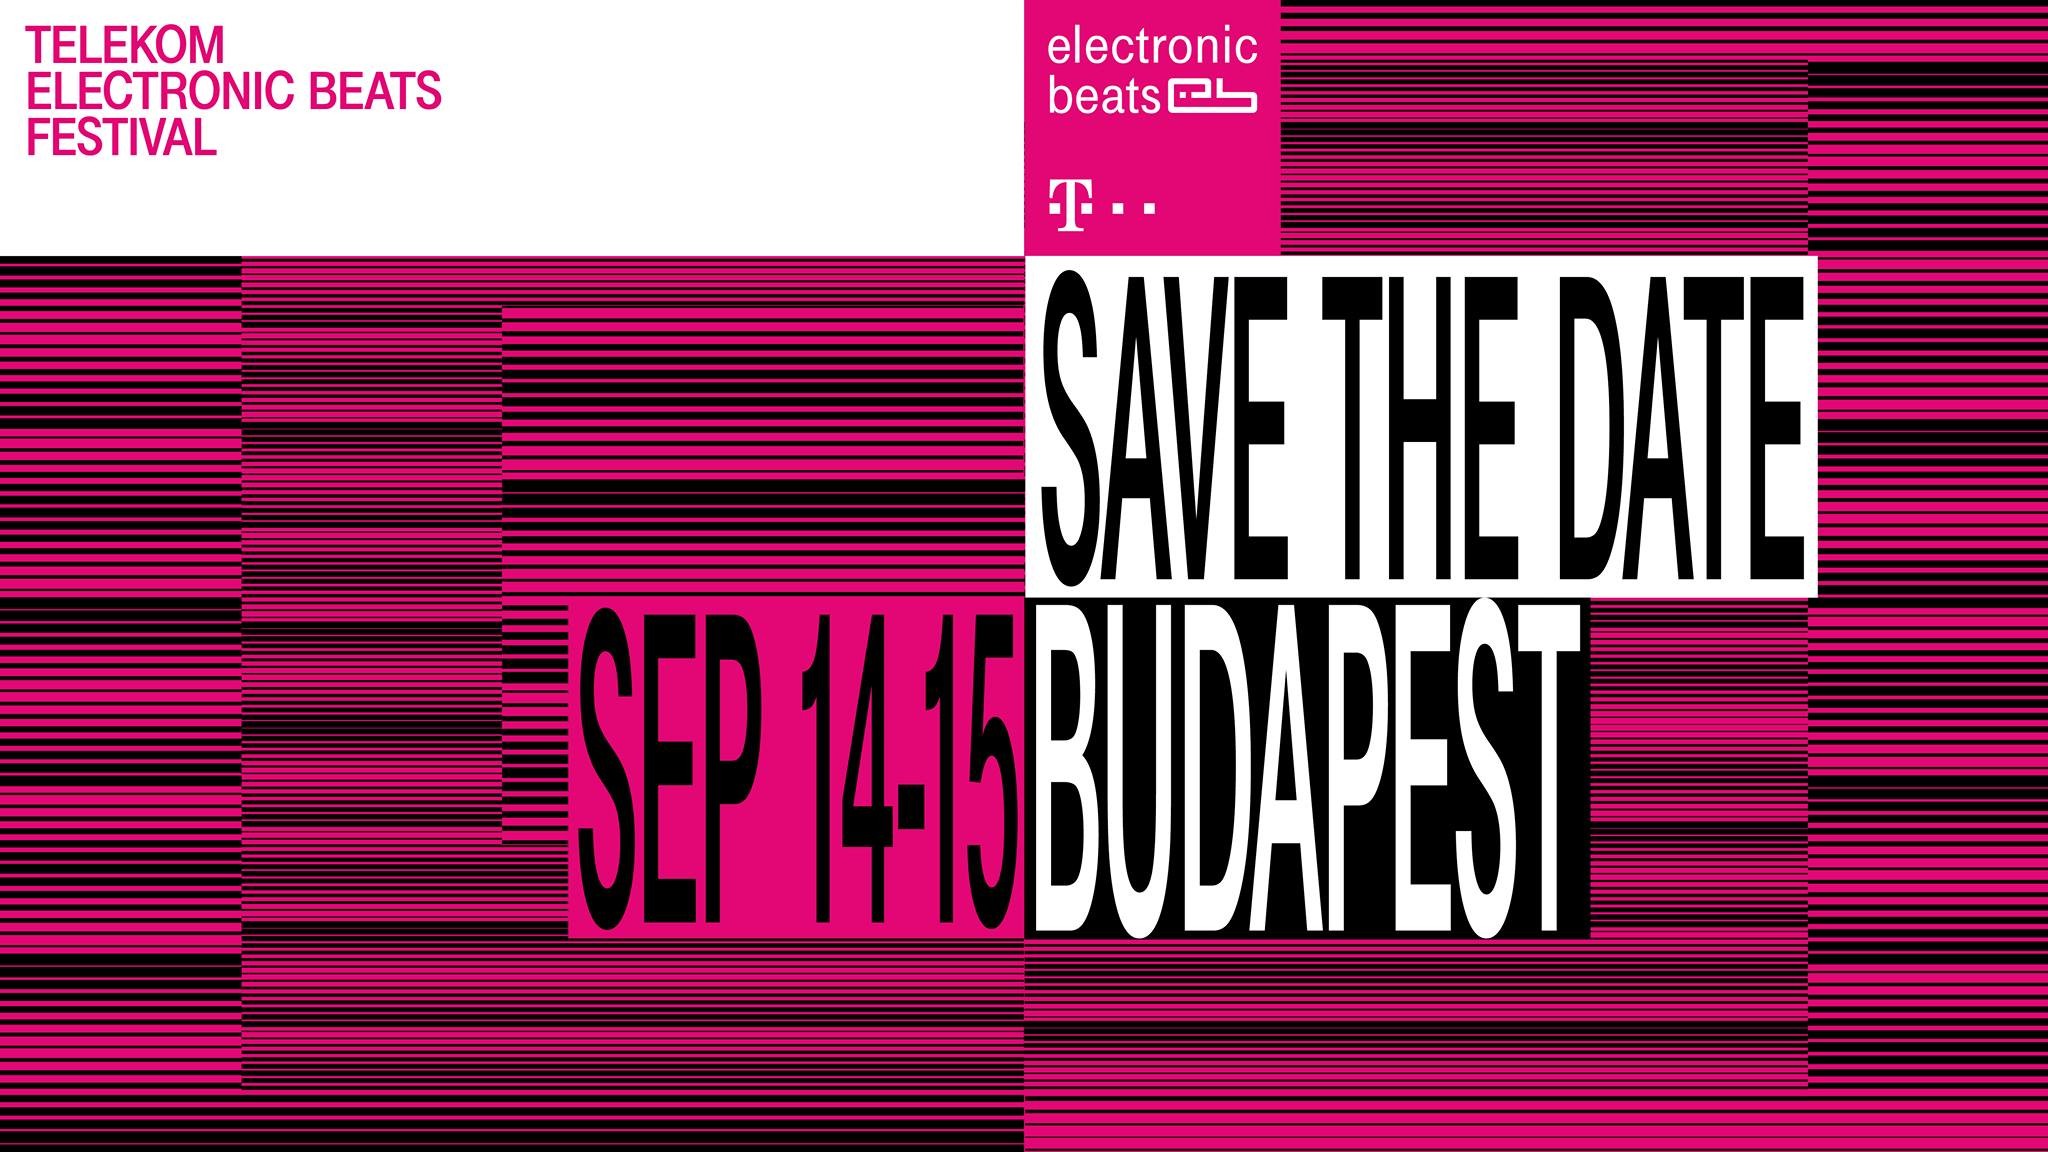 Szeptember közepén újra Telekom Electronic Beats Festival lesz Budapesten